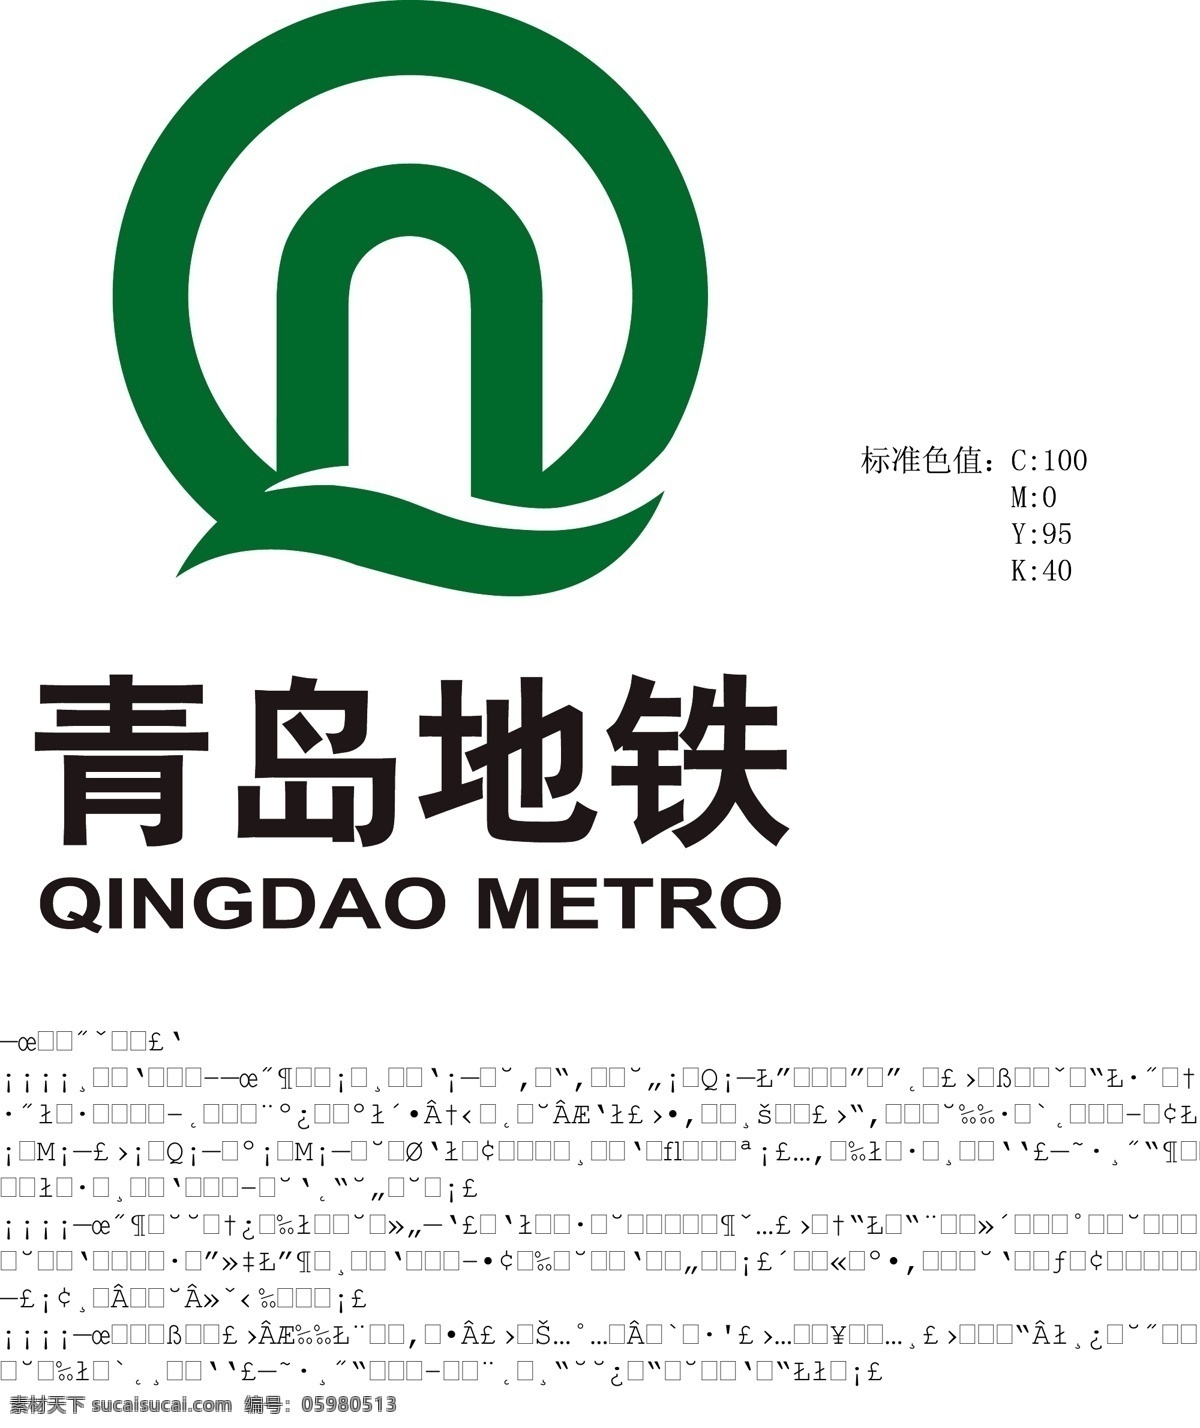 青岛 地铁 矢量 标志 含 释义 青岛地铁 青岛地铁标志 地铁标志 标志释义 标识 名片卡片